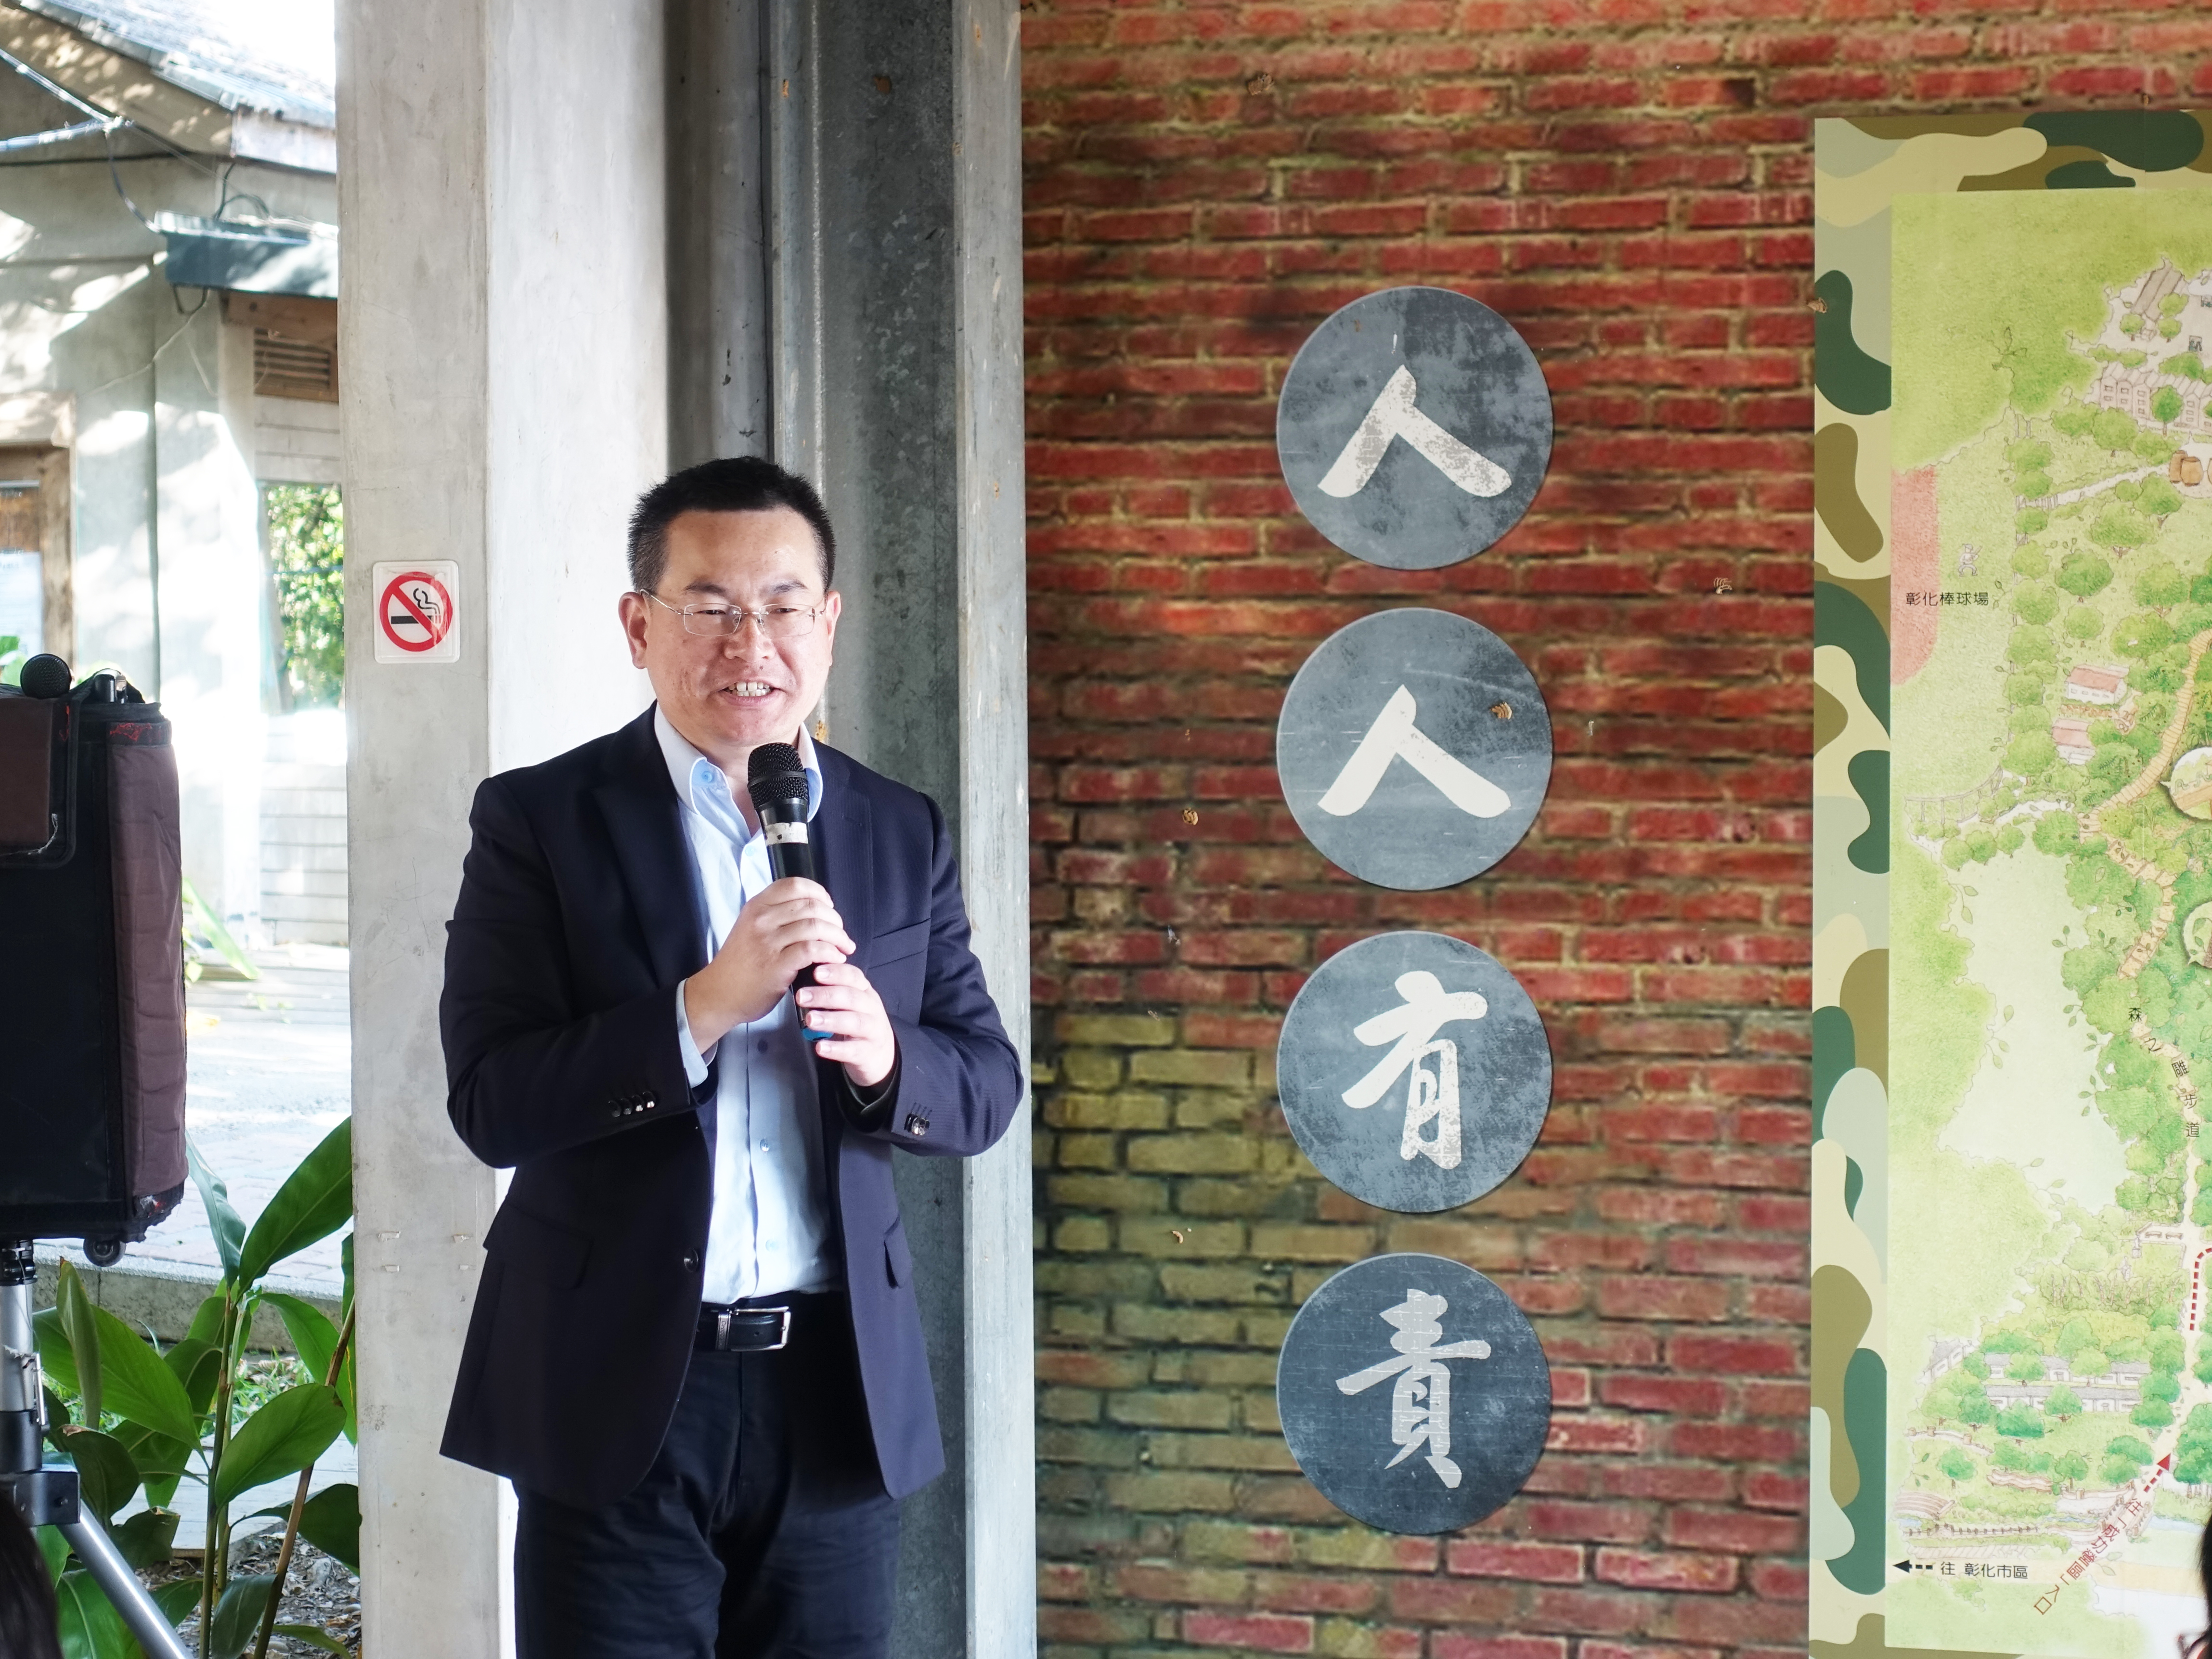 《出彰化城藝術展-古城的苗圃》策展人-陳俊德先生於開幕典禮致詞。